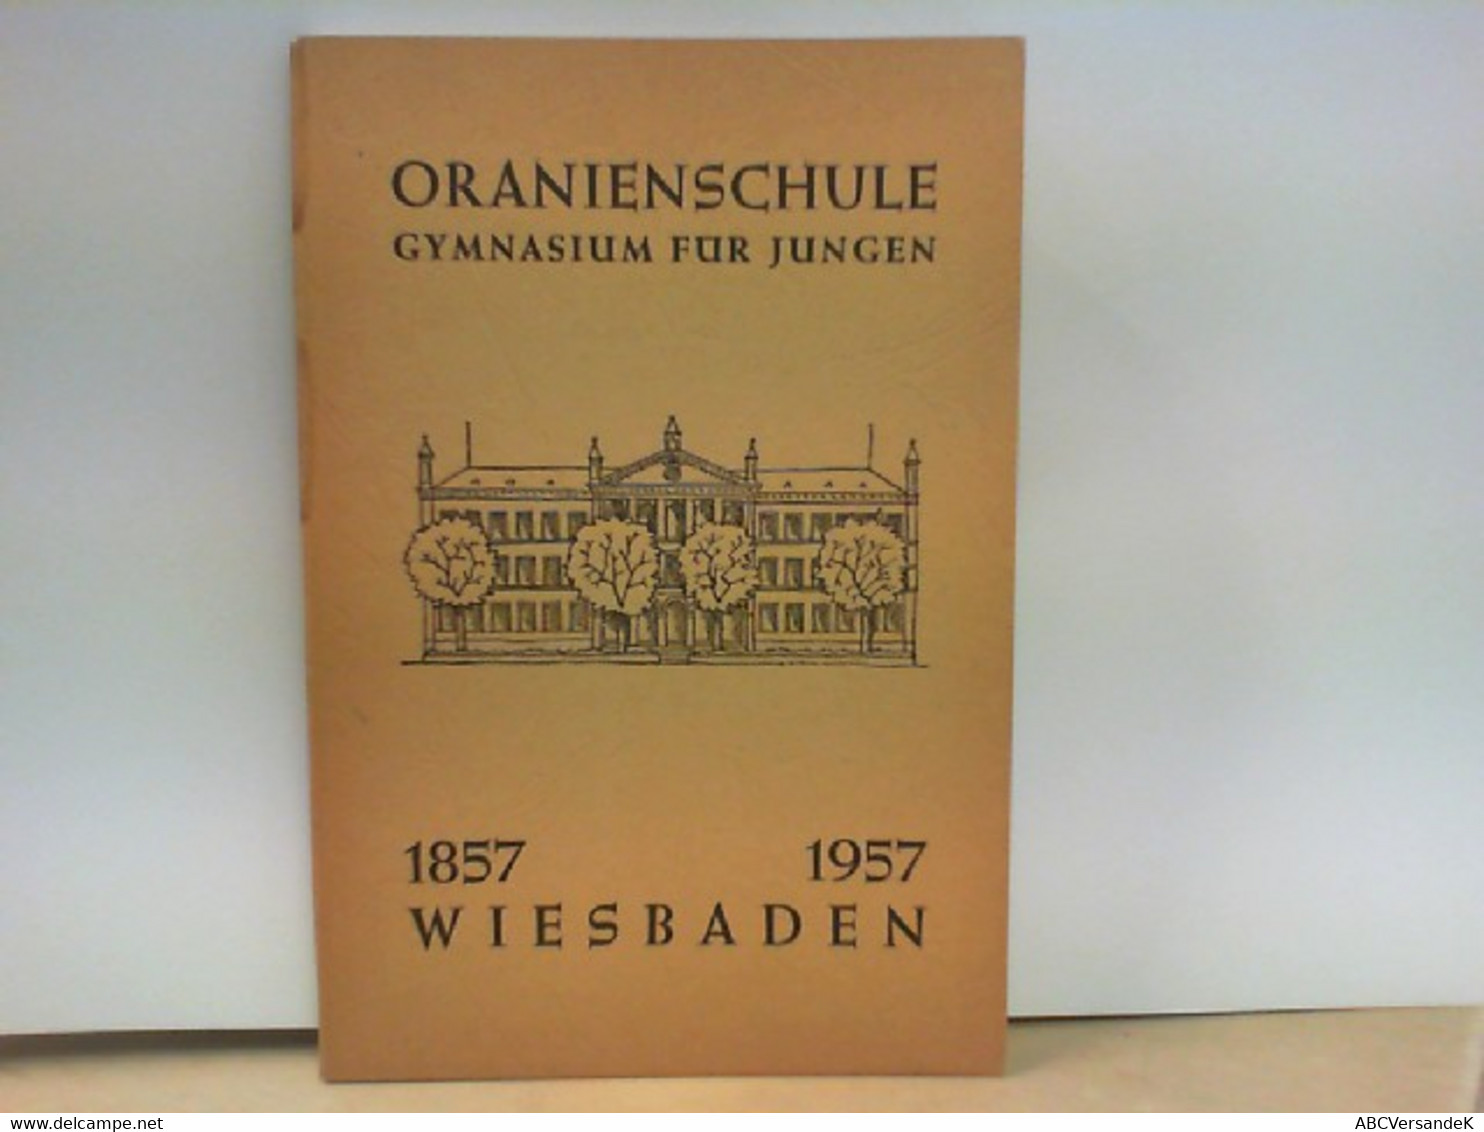 100 Jahre Oranienschule Gymnasium Für Jungen Wiesbaden 1857 - 1957 - Hesse